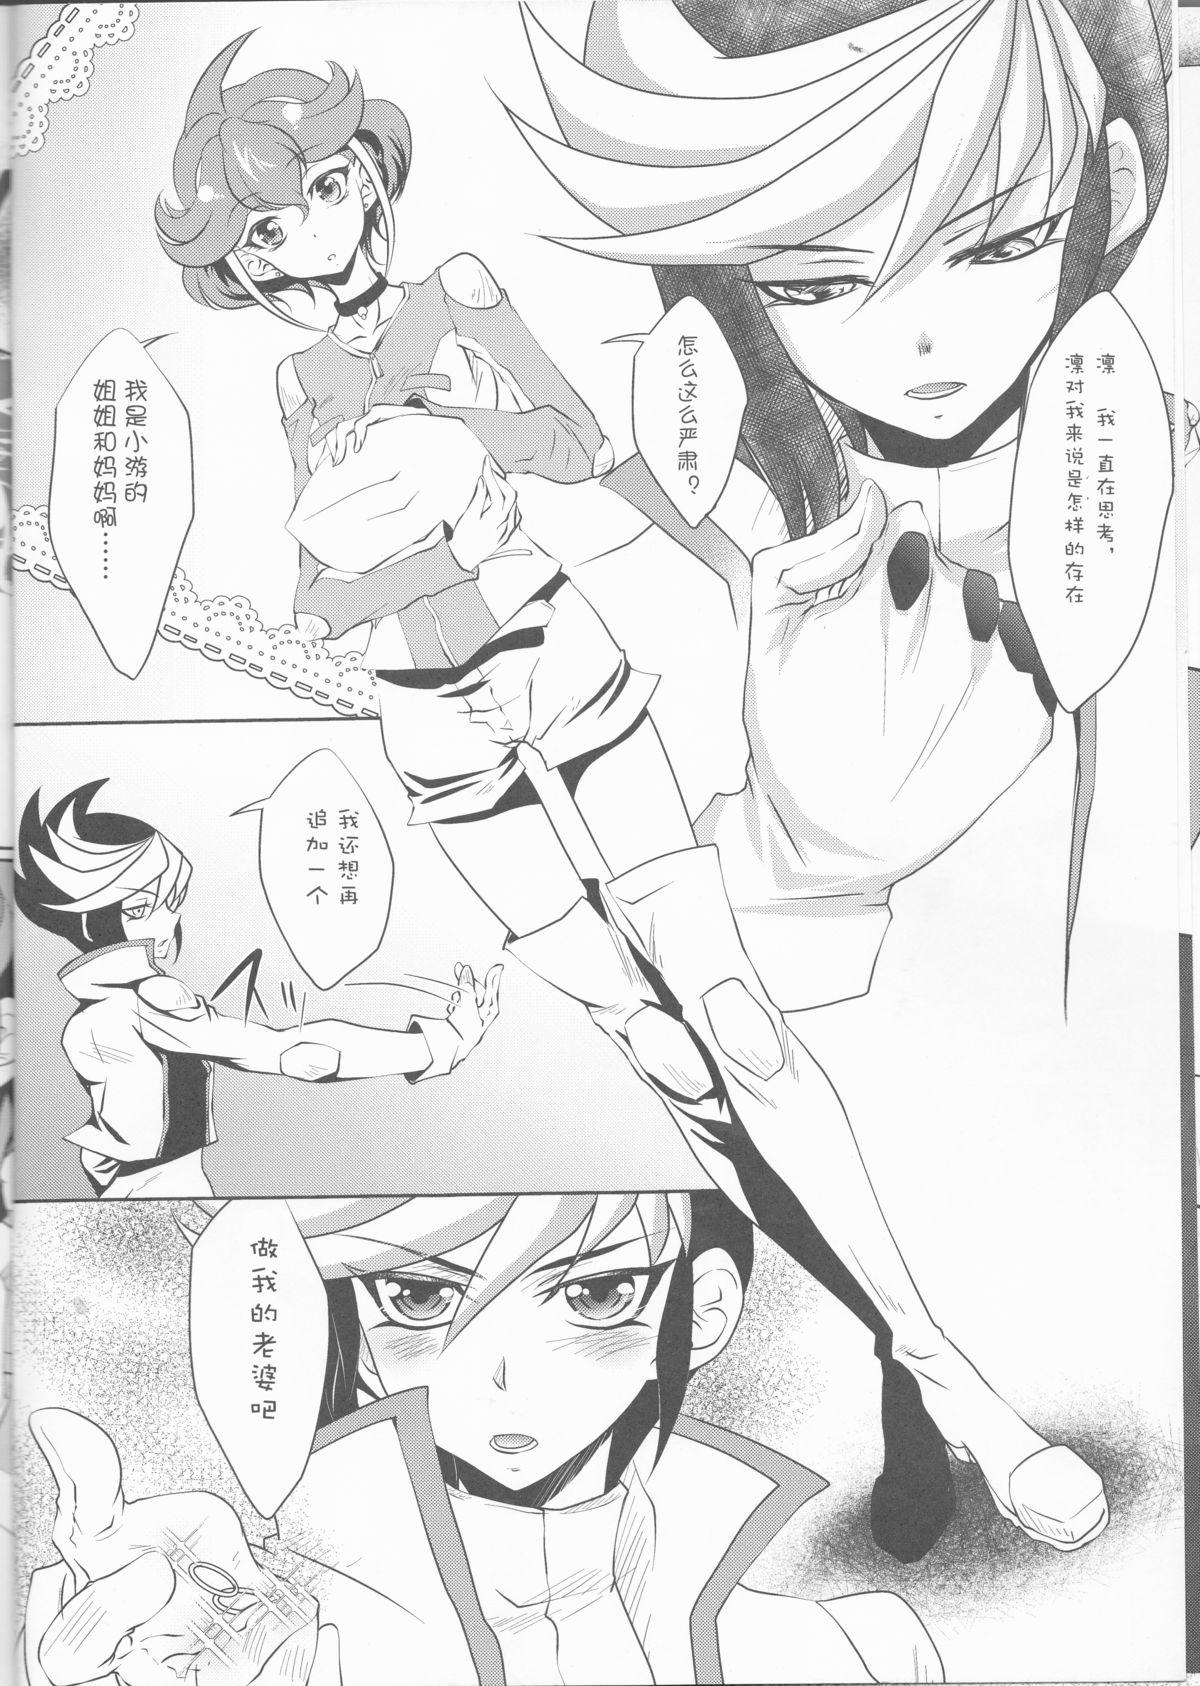 Milf Sex Watashi o Daite Tonde - Yu-gi-oh arc-v Stripping - Page 8